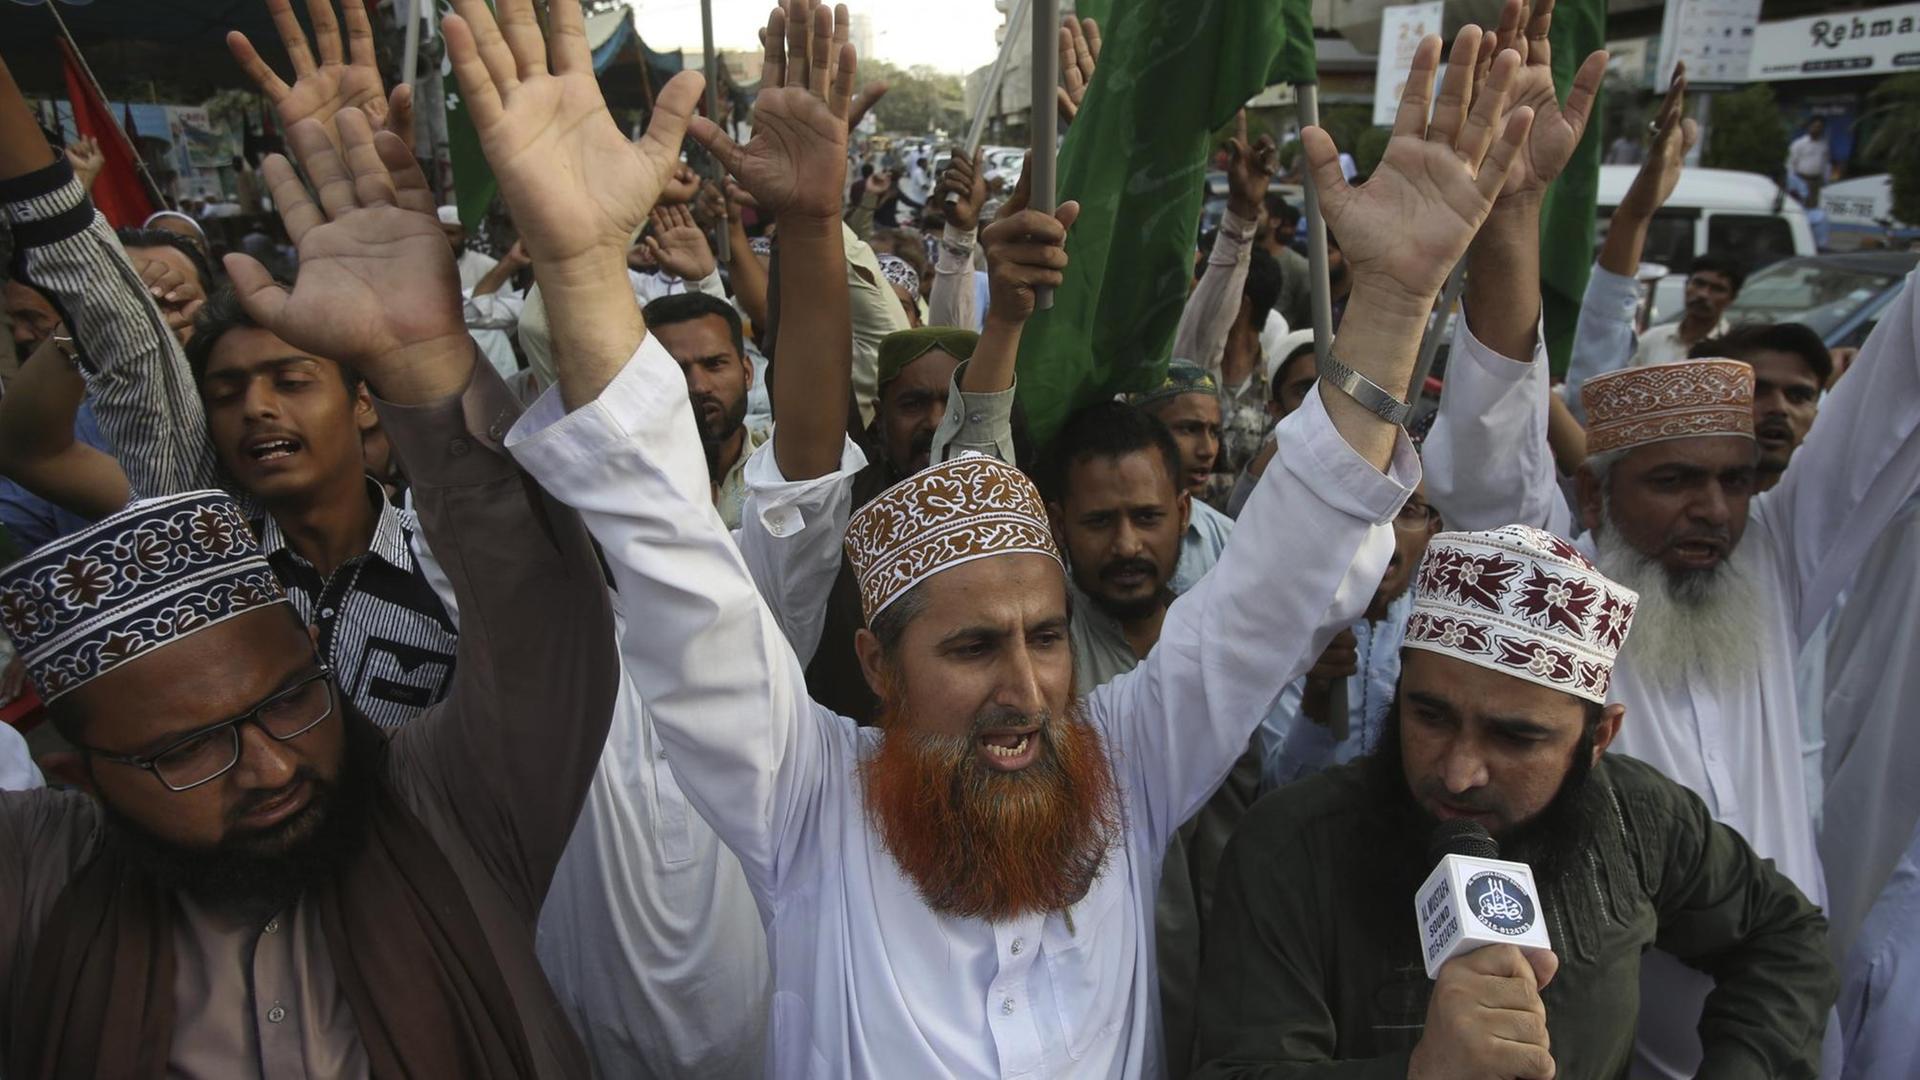 Radikale Islamisten bei einer Demonstration, sie strecken die Hände nach oben.